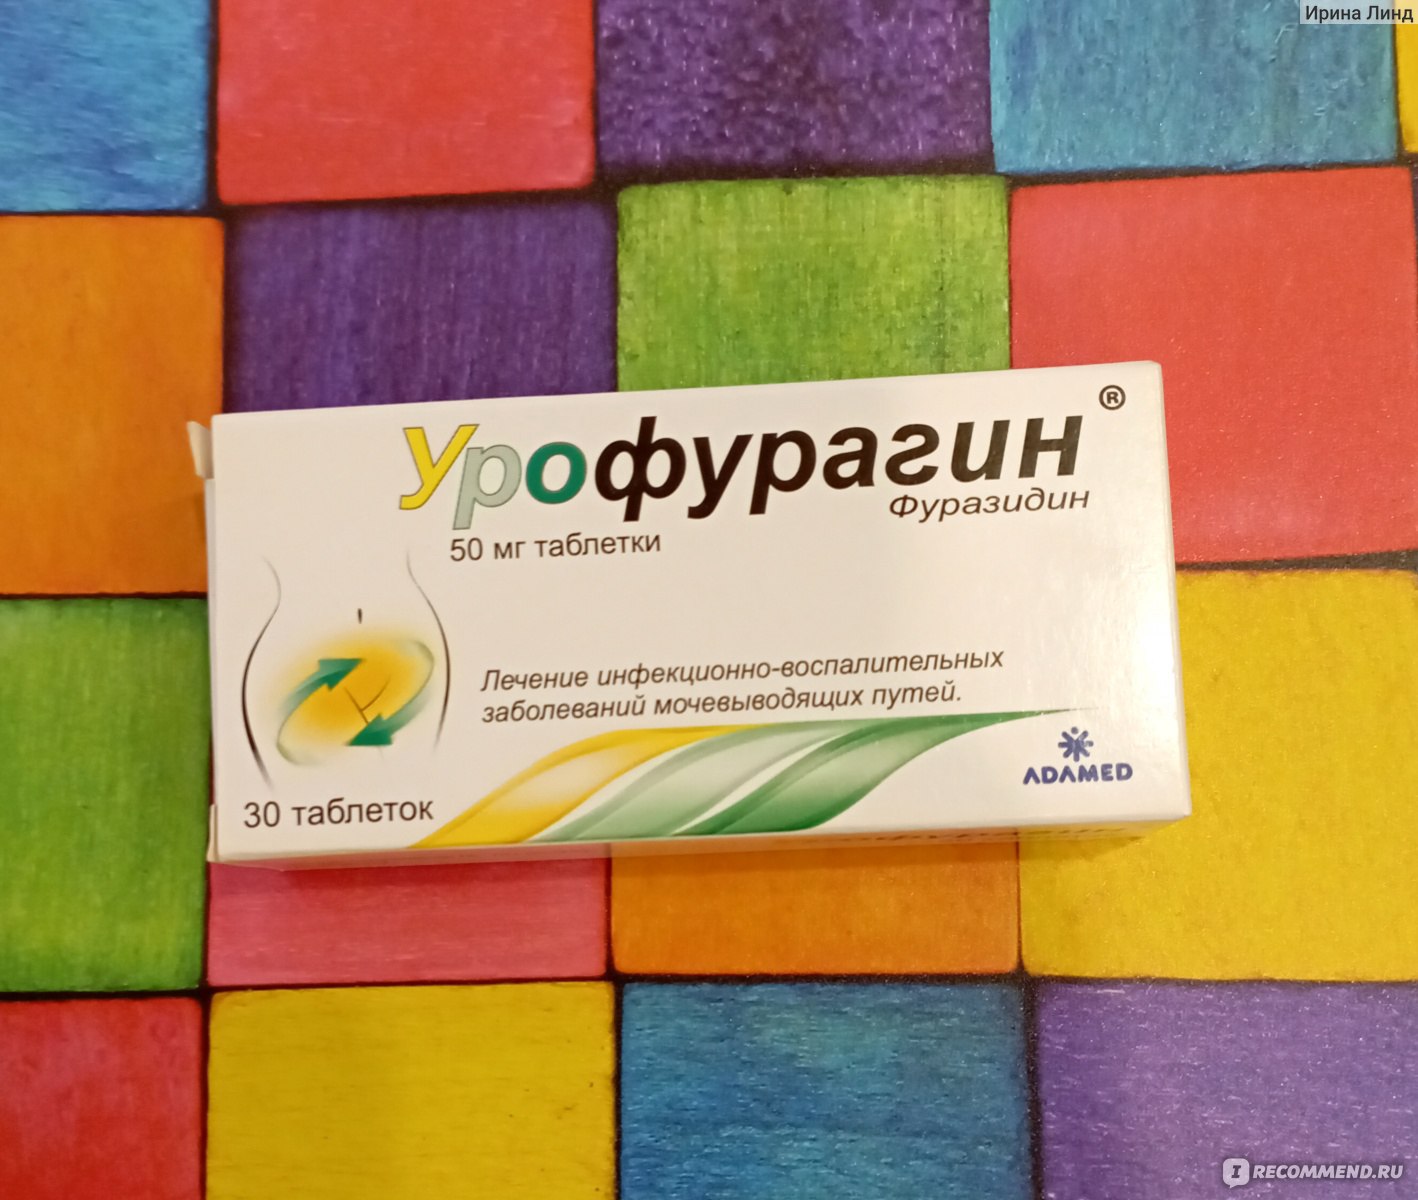 Противомикробные средства Adamed Урофурагин - «Эффективный препарат .